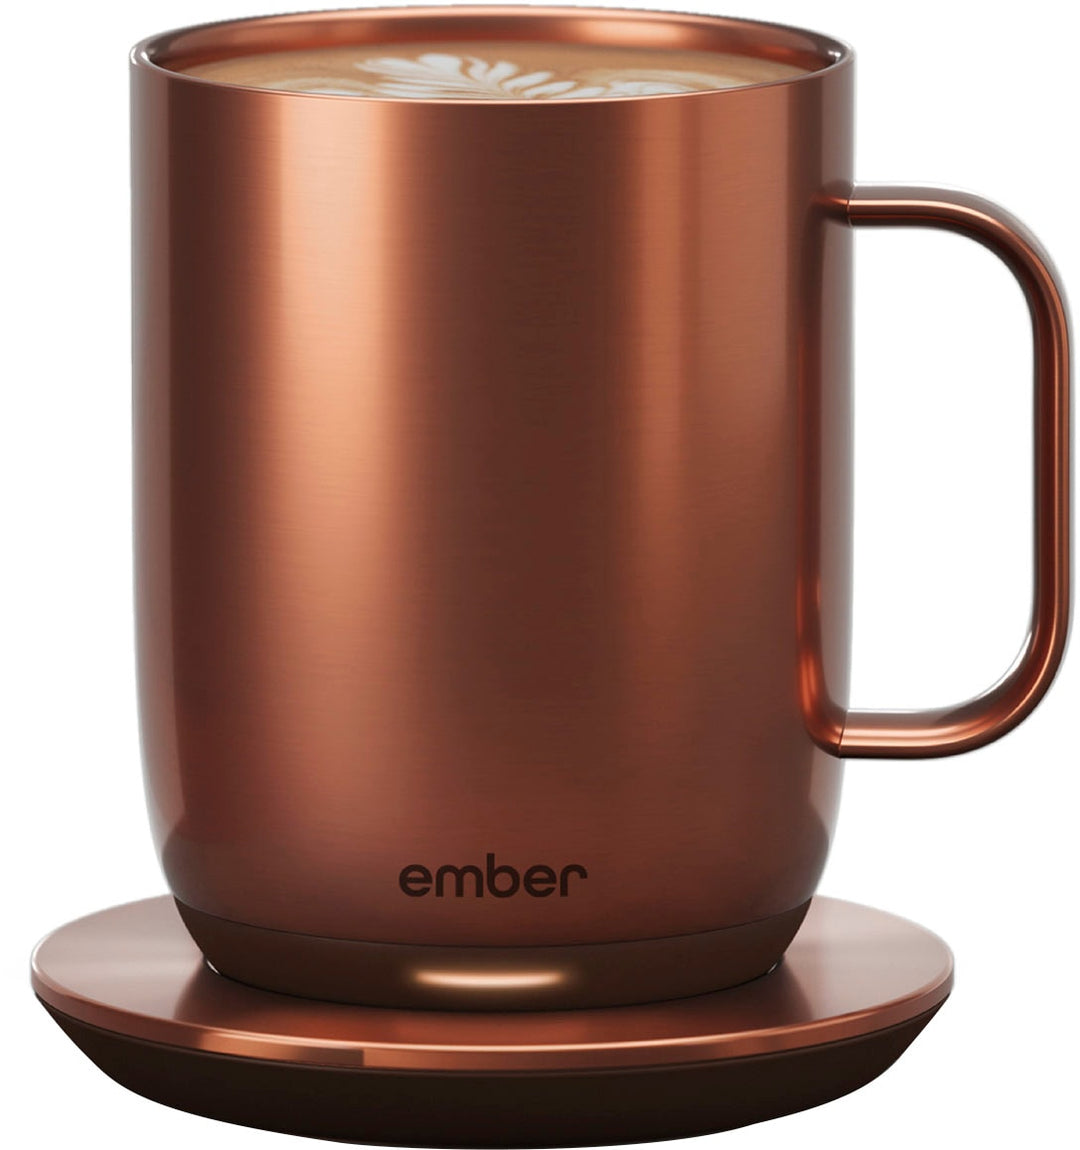 Ember - Temperature Control Smart Mug² - 14 oz - Copper_2